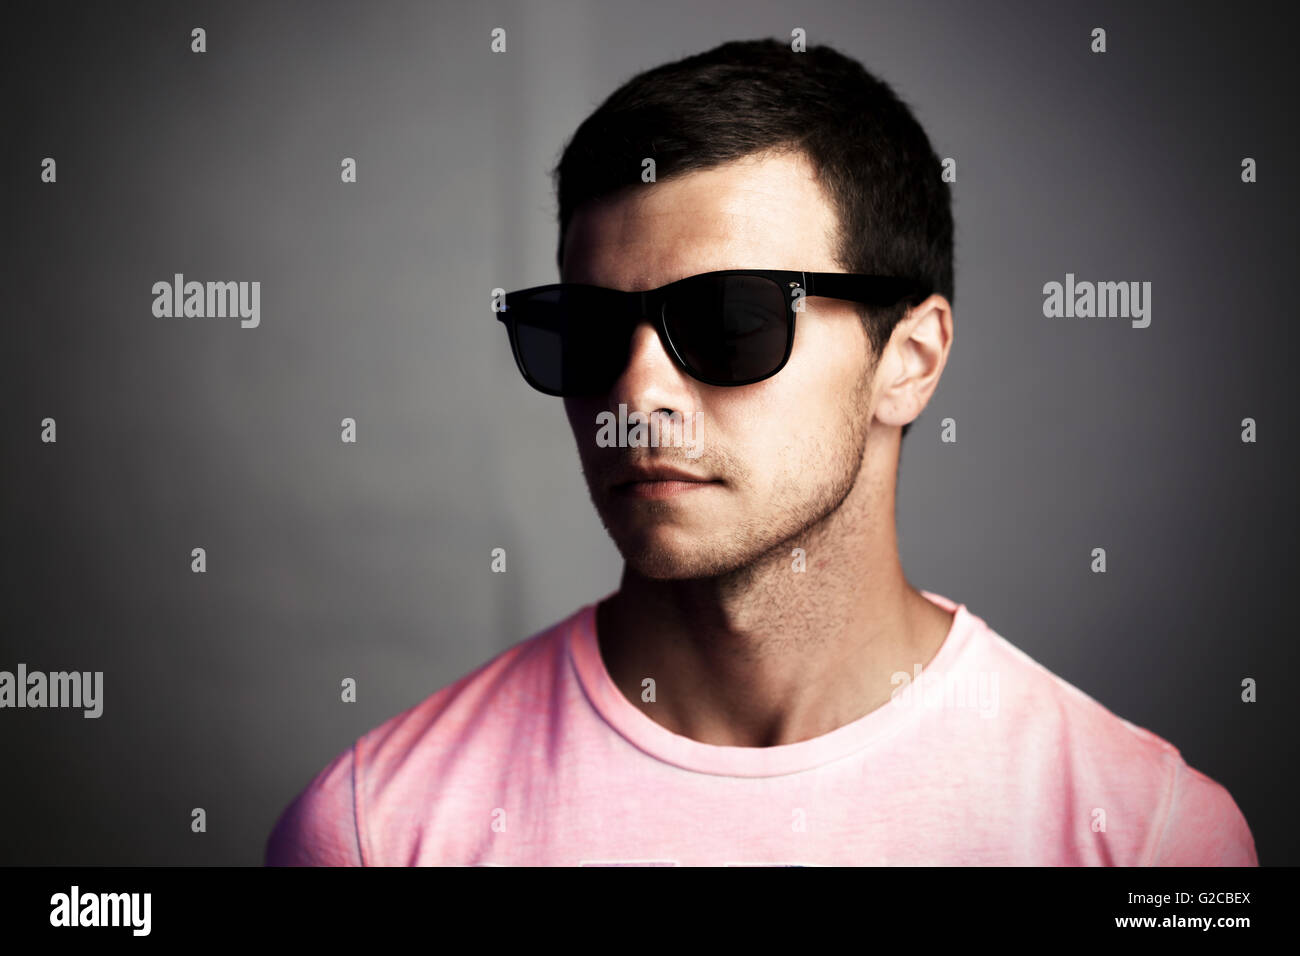 Dunkle Porträt eines jungen Mannes mit Sonnenbrille, soziale Isolation und Anonymität Konzept Stockfoto